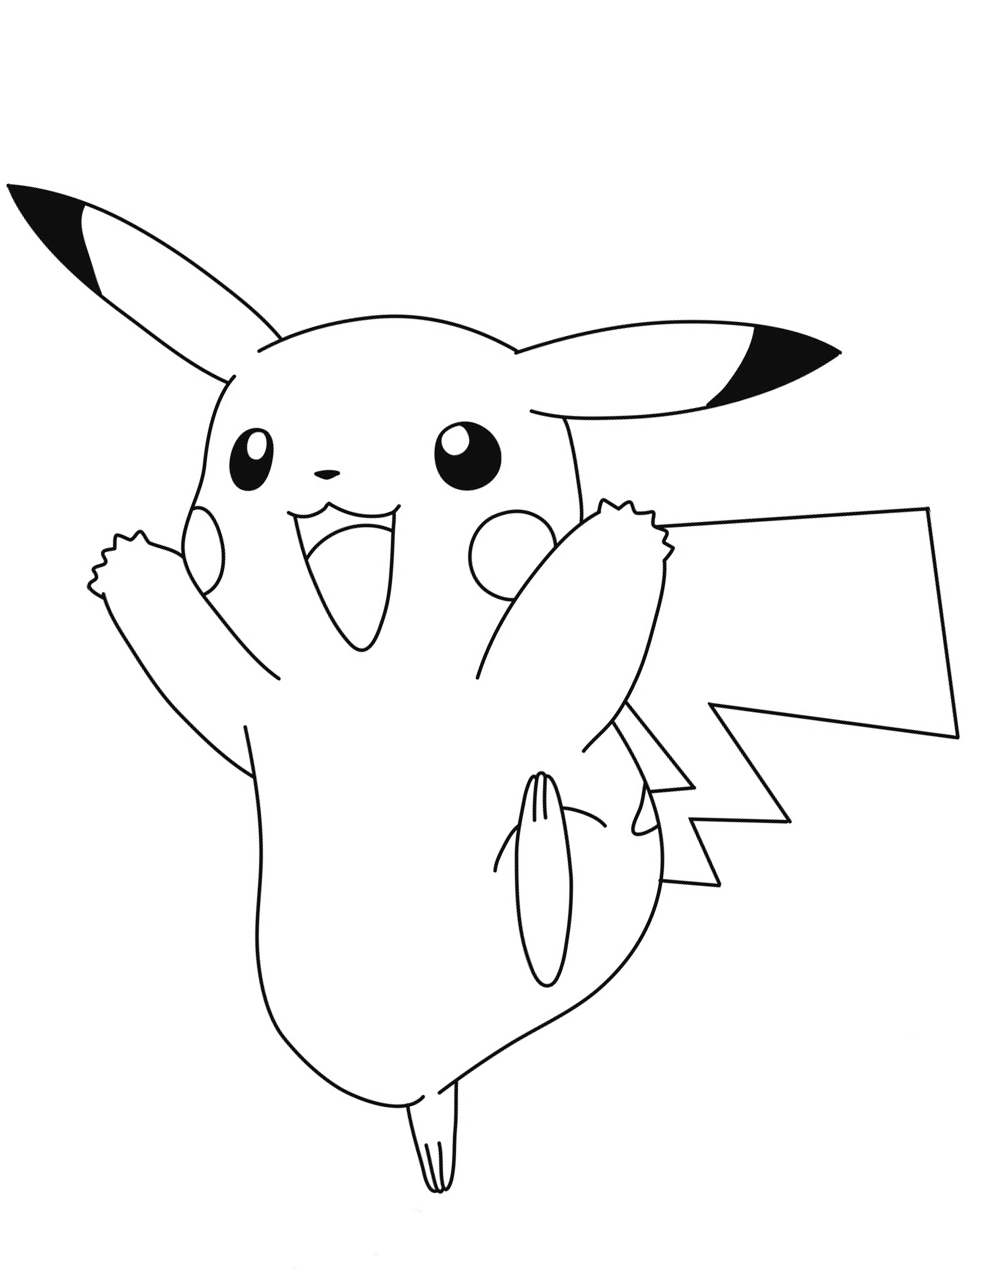 ▷ Dibujos Pikachu para dibujar, imprimir, colorear y recortar fácilmente